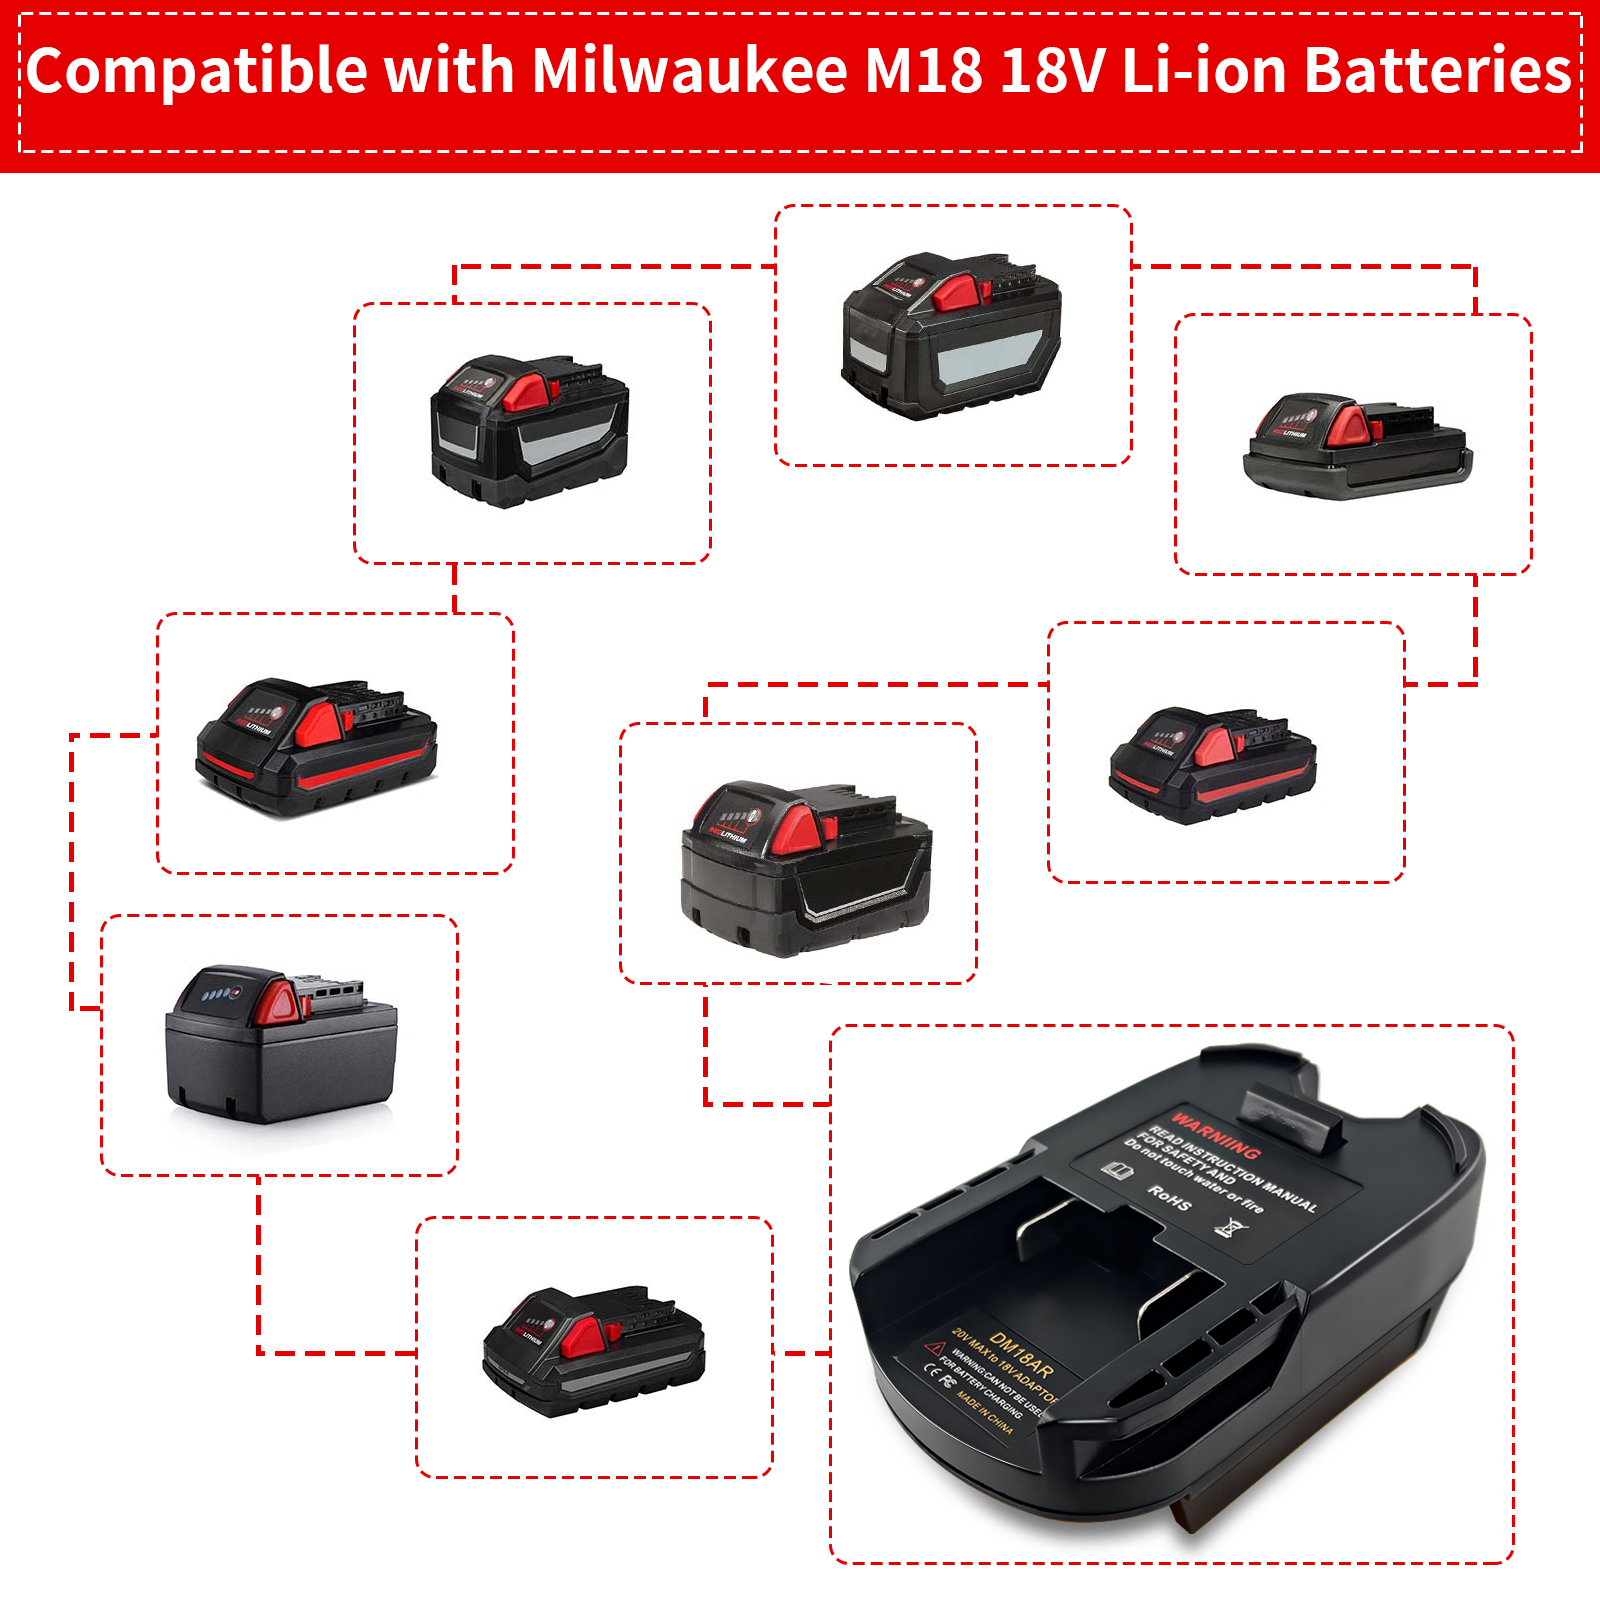 Adaptador de bateria Converta baterias Milwaukee 18V M18 e Dewalt 20V em ferramentas sem fio Ridgid AEG